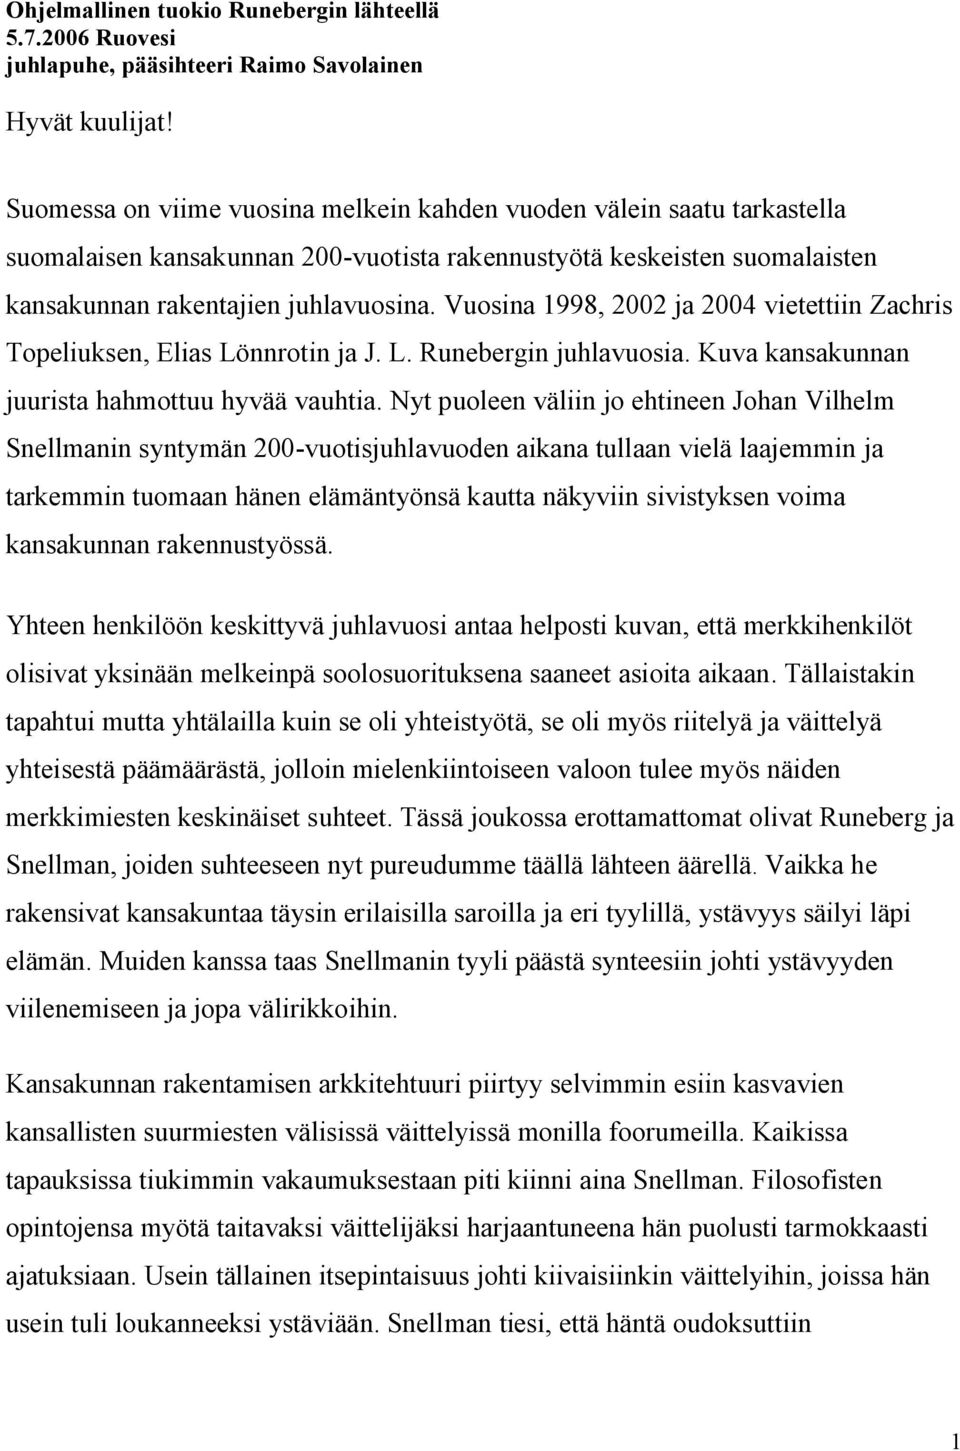 Vuosina 1998, 2002 ja 2004 vietettiin Zachris Topeliuksen, Elias Lönnrotin ja J. L. Runebergin juhlavuosia. Kuva kansakunnan juurista hahmottuu hyvää vauhtia.